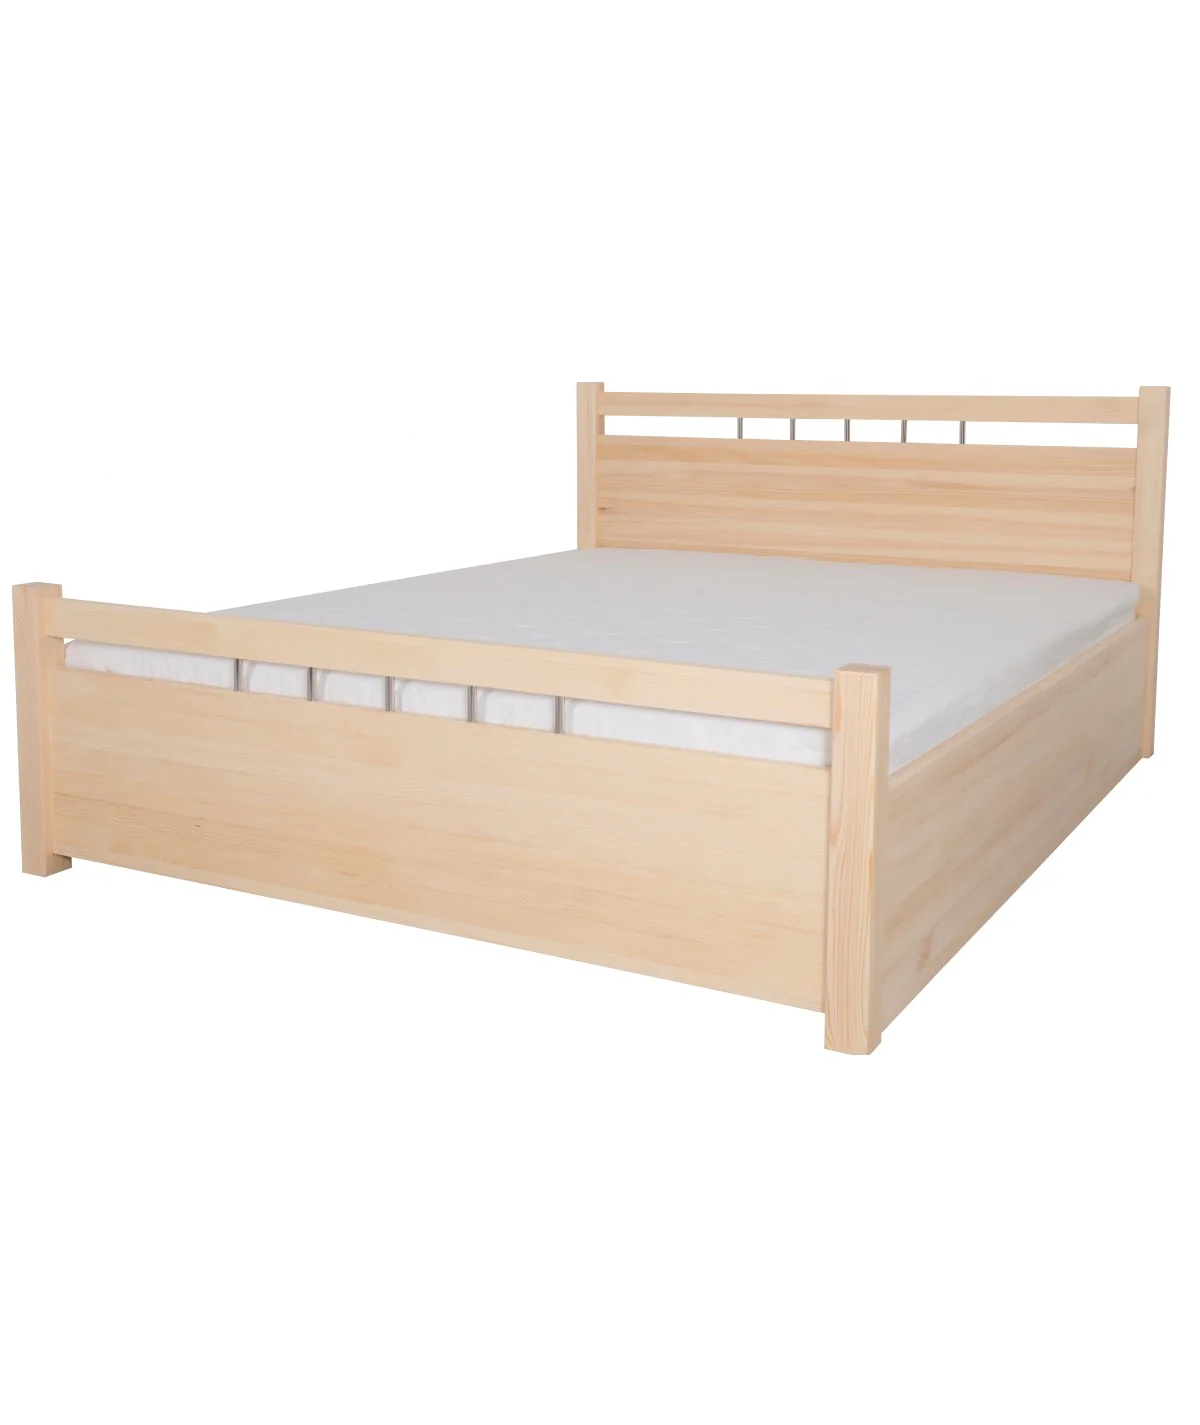 Łóżko bukowe OPAL 6 STOLMIS podnoszone na ramie drewnianej